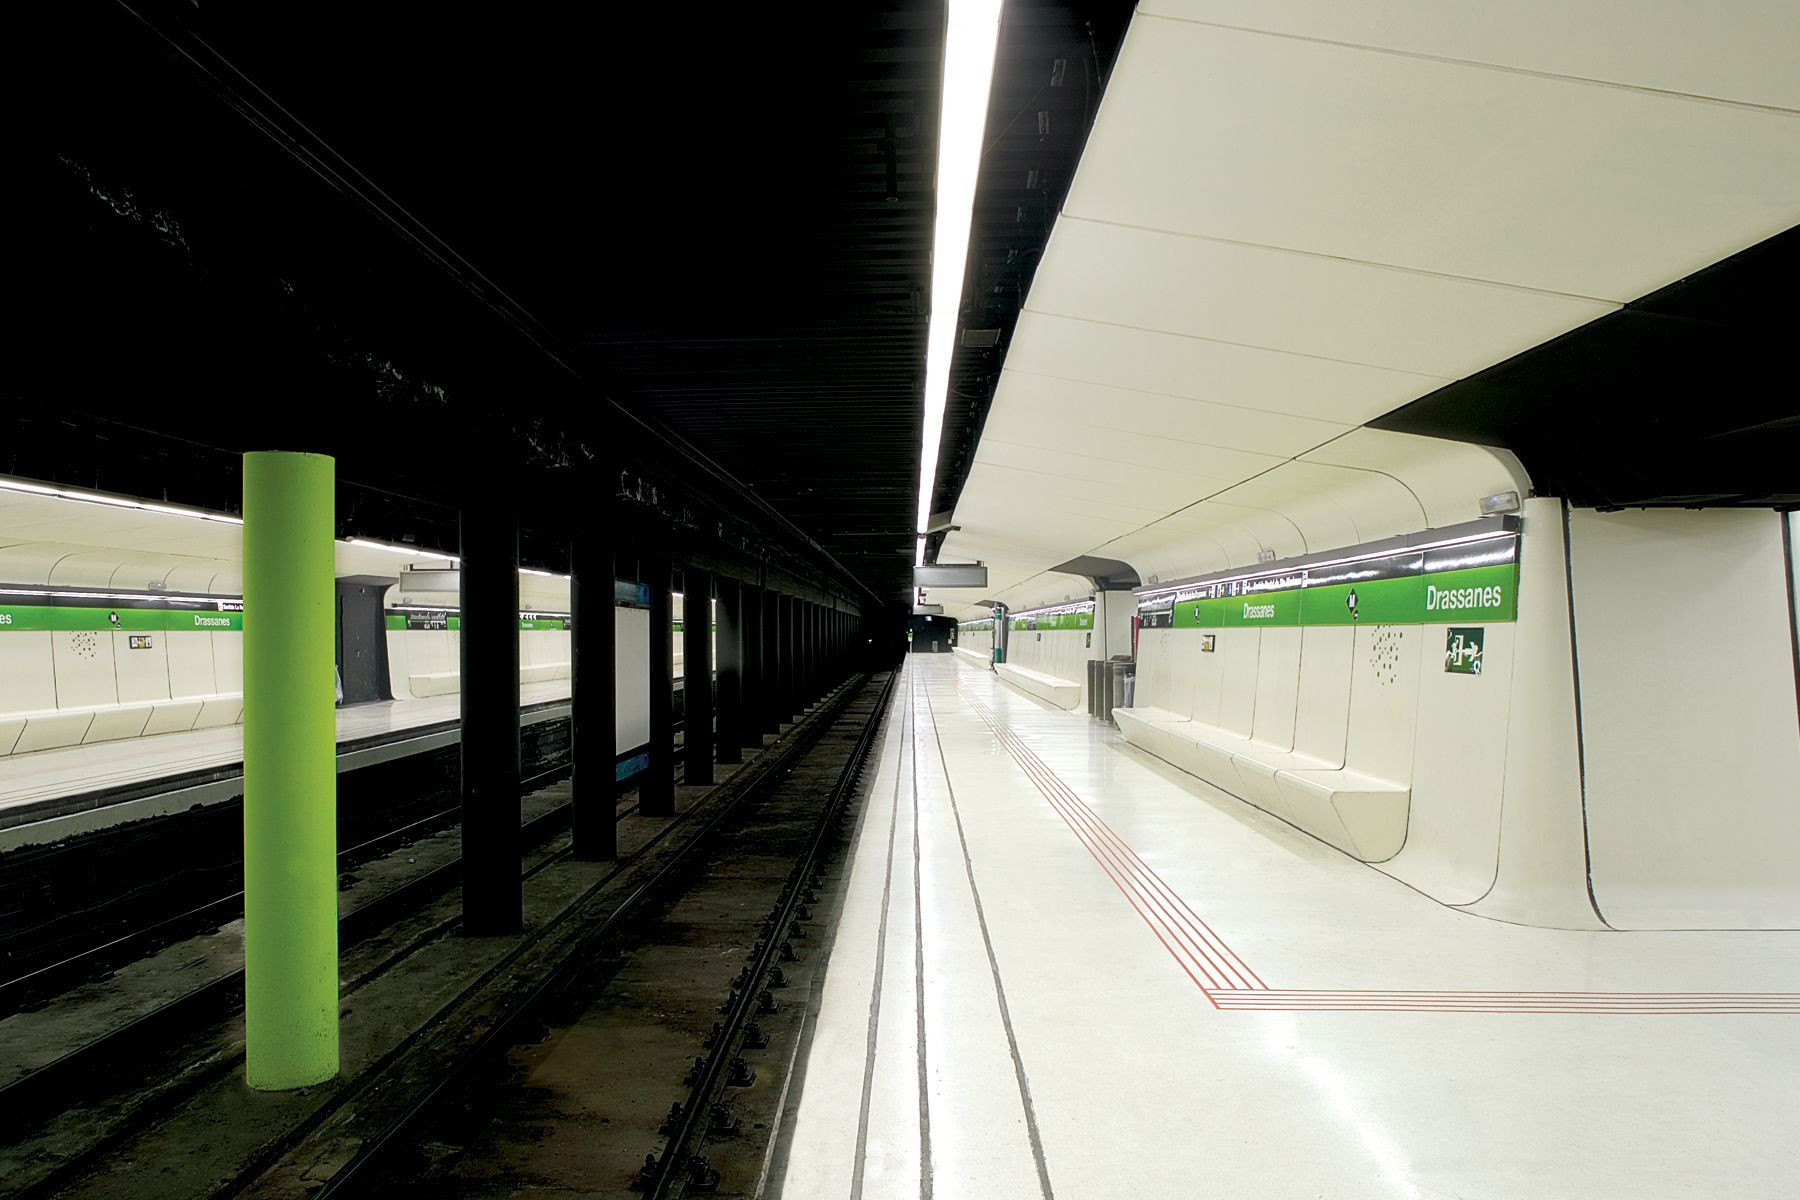 Estación de metro de Drassanes, en la L3